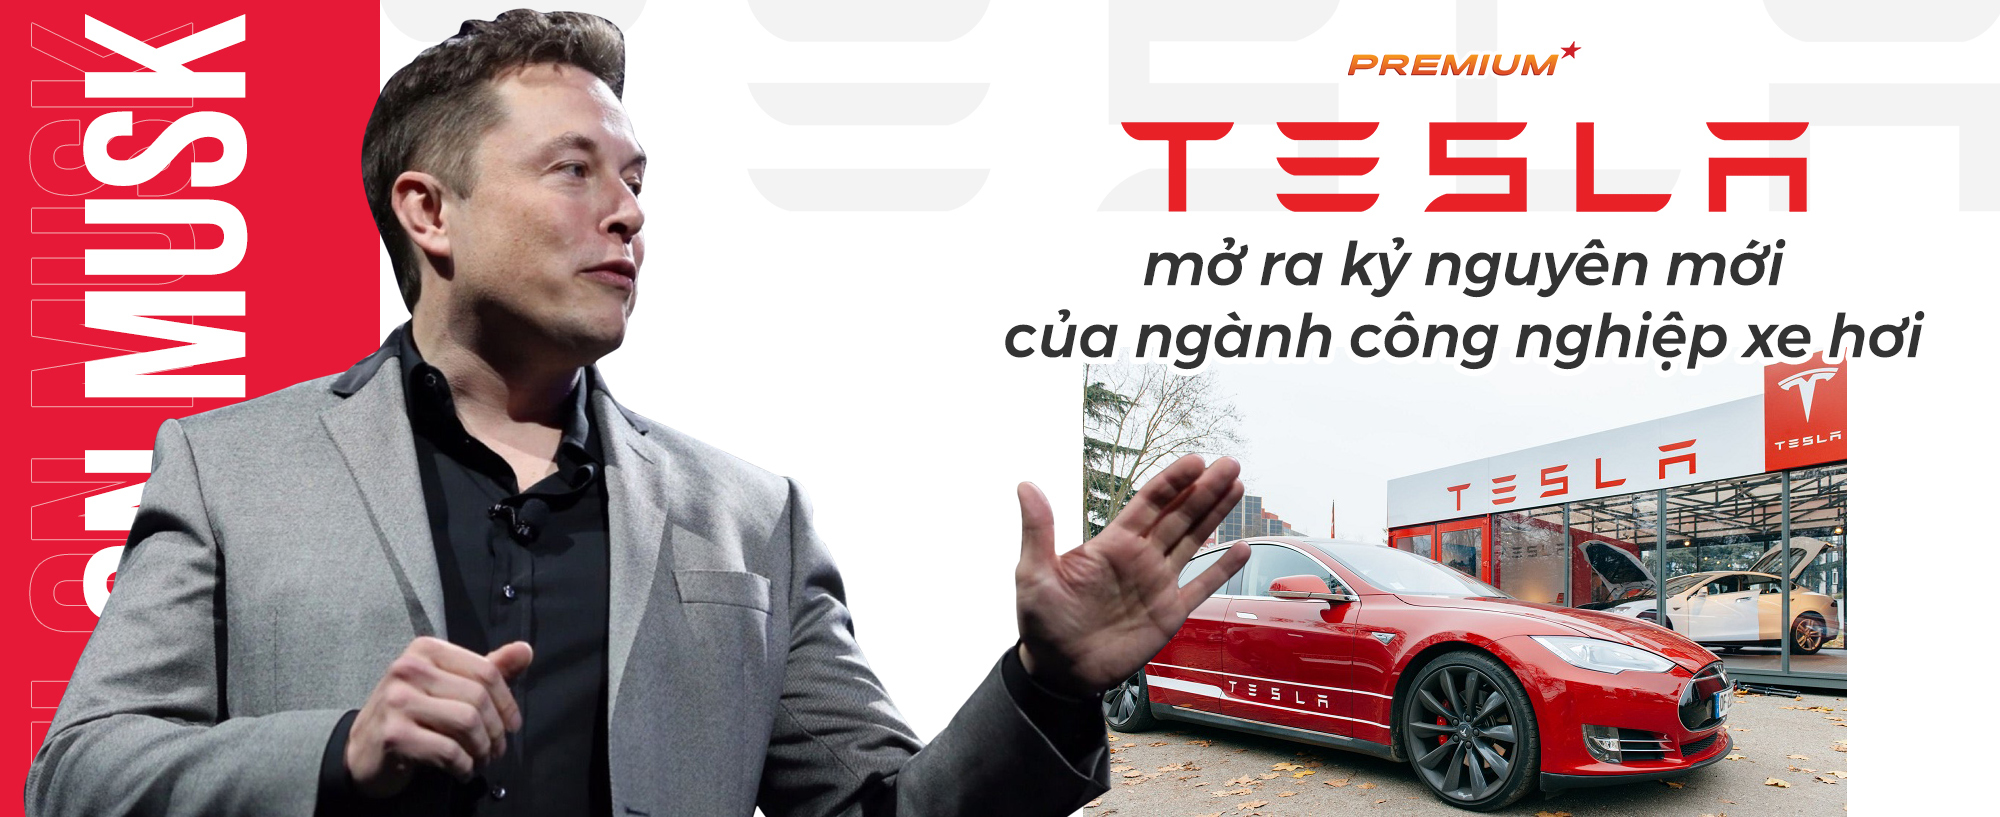 Tesla mở ra kỷ nguyên mới của ngành công nghiệp xe hơi